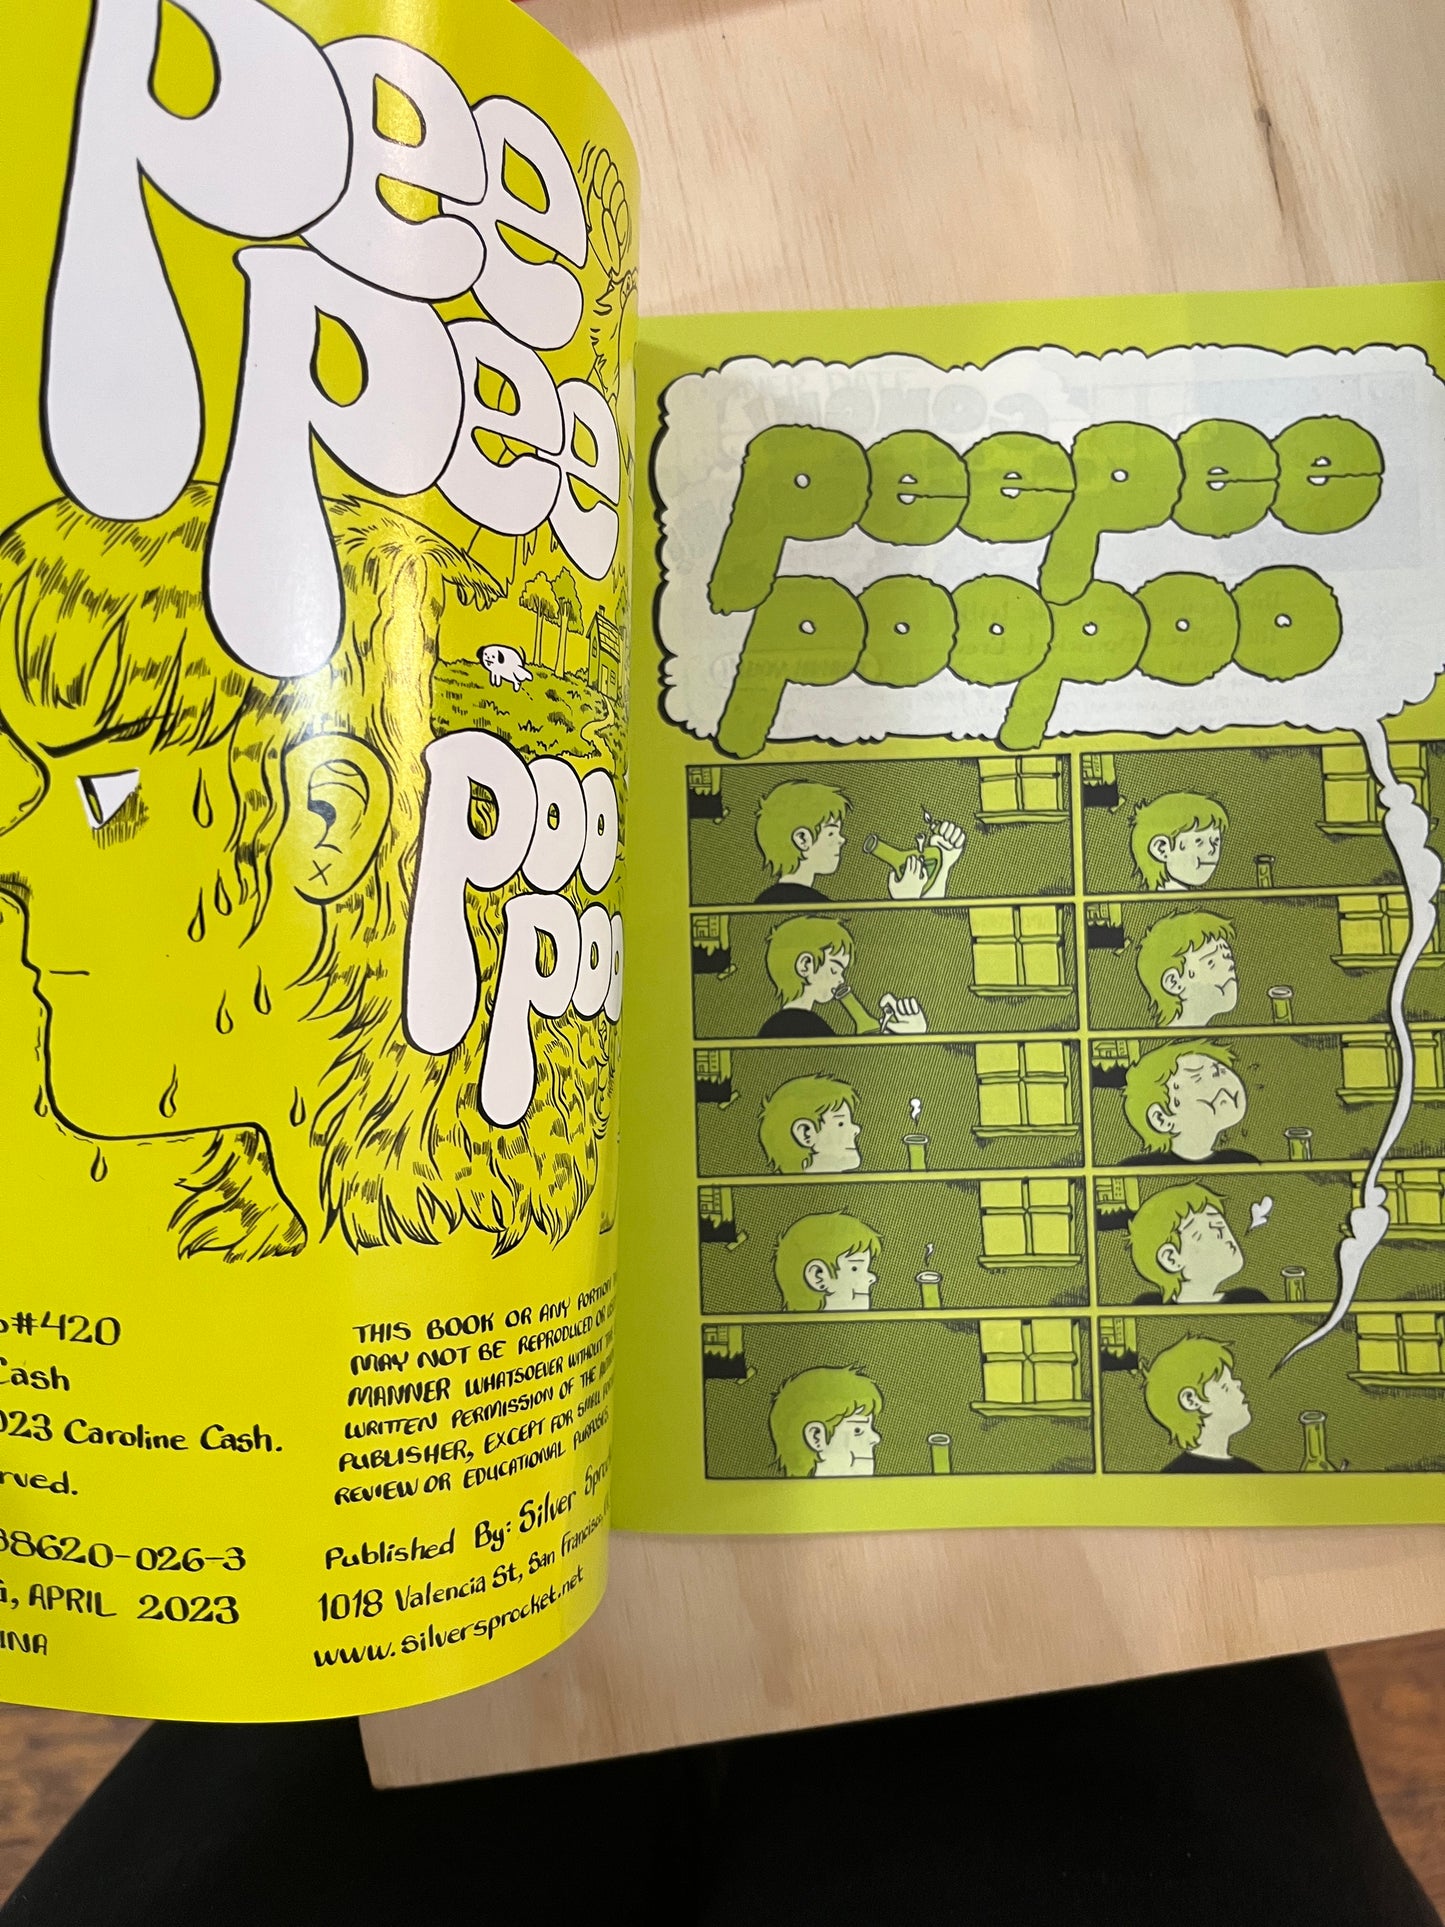 PeePee-PooPoo Issue #420